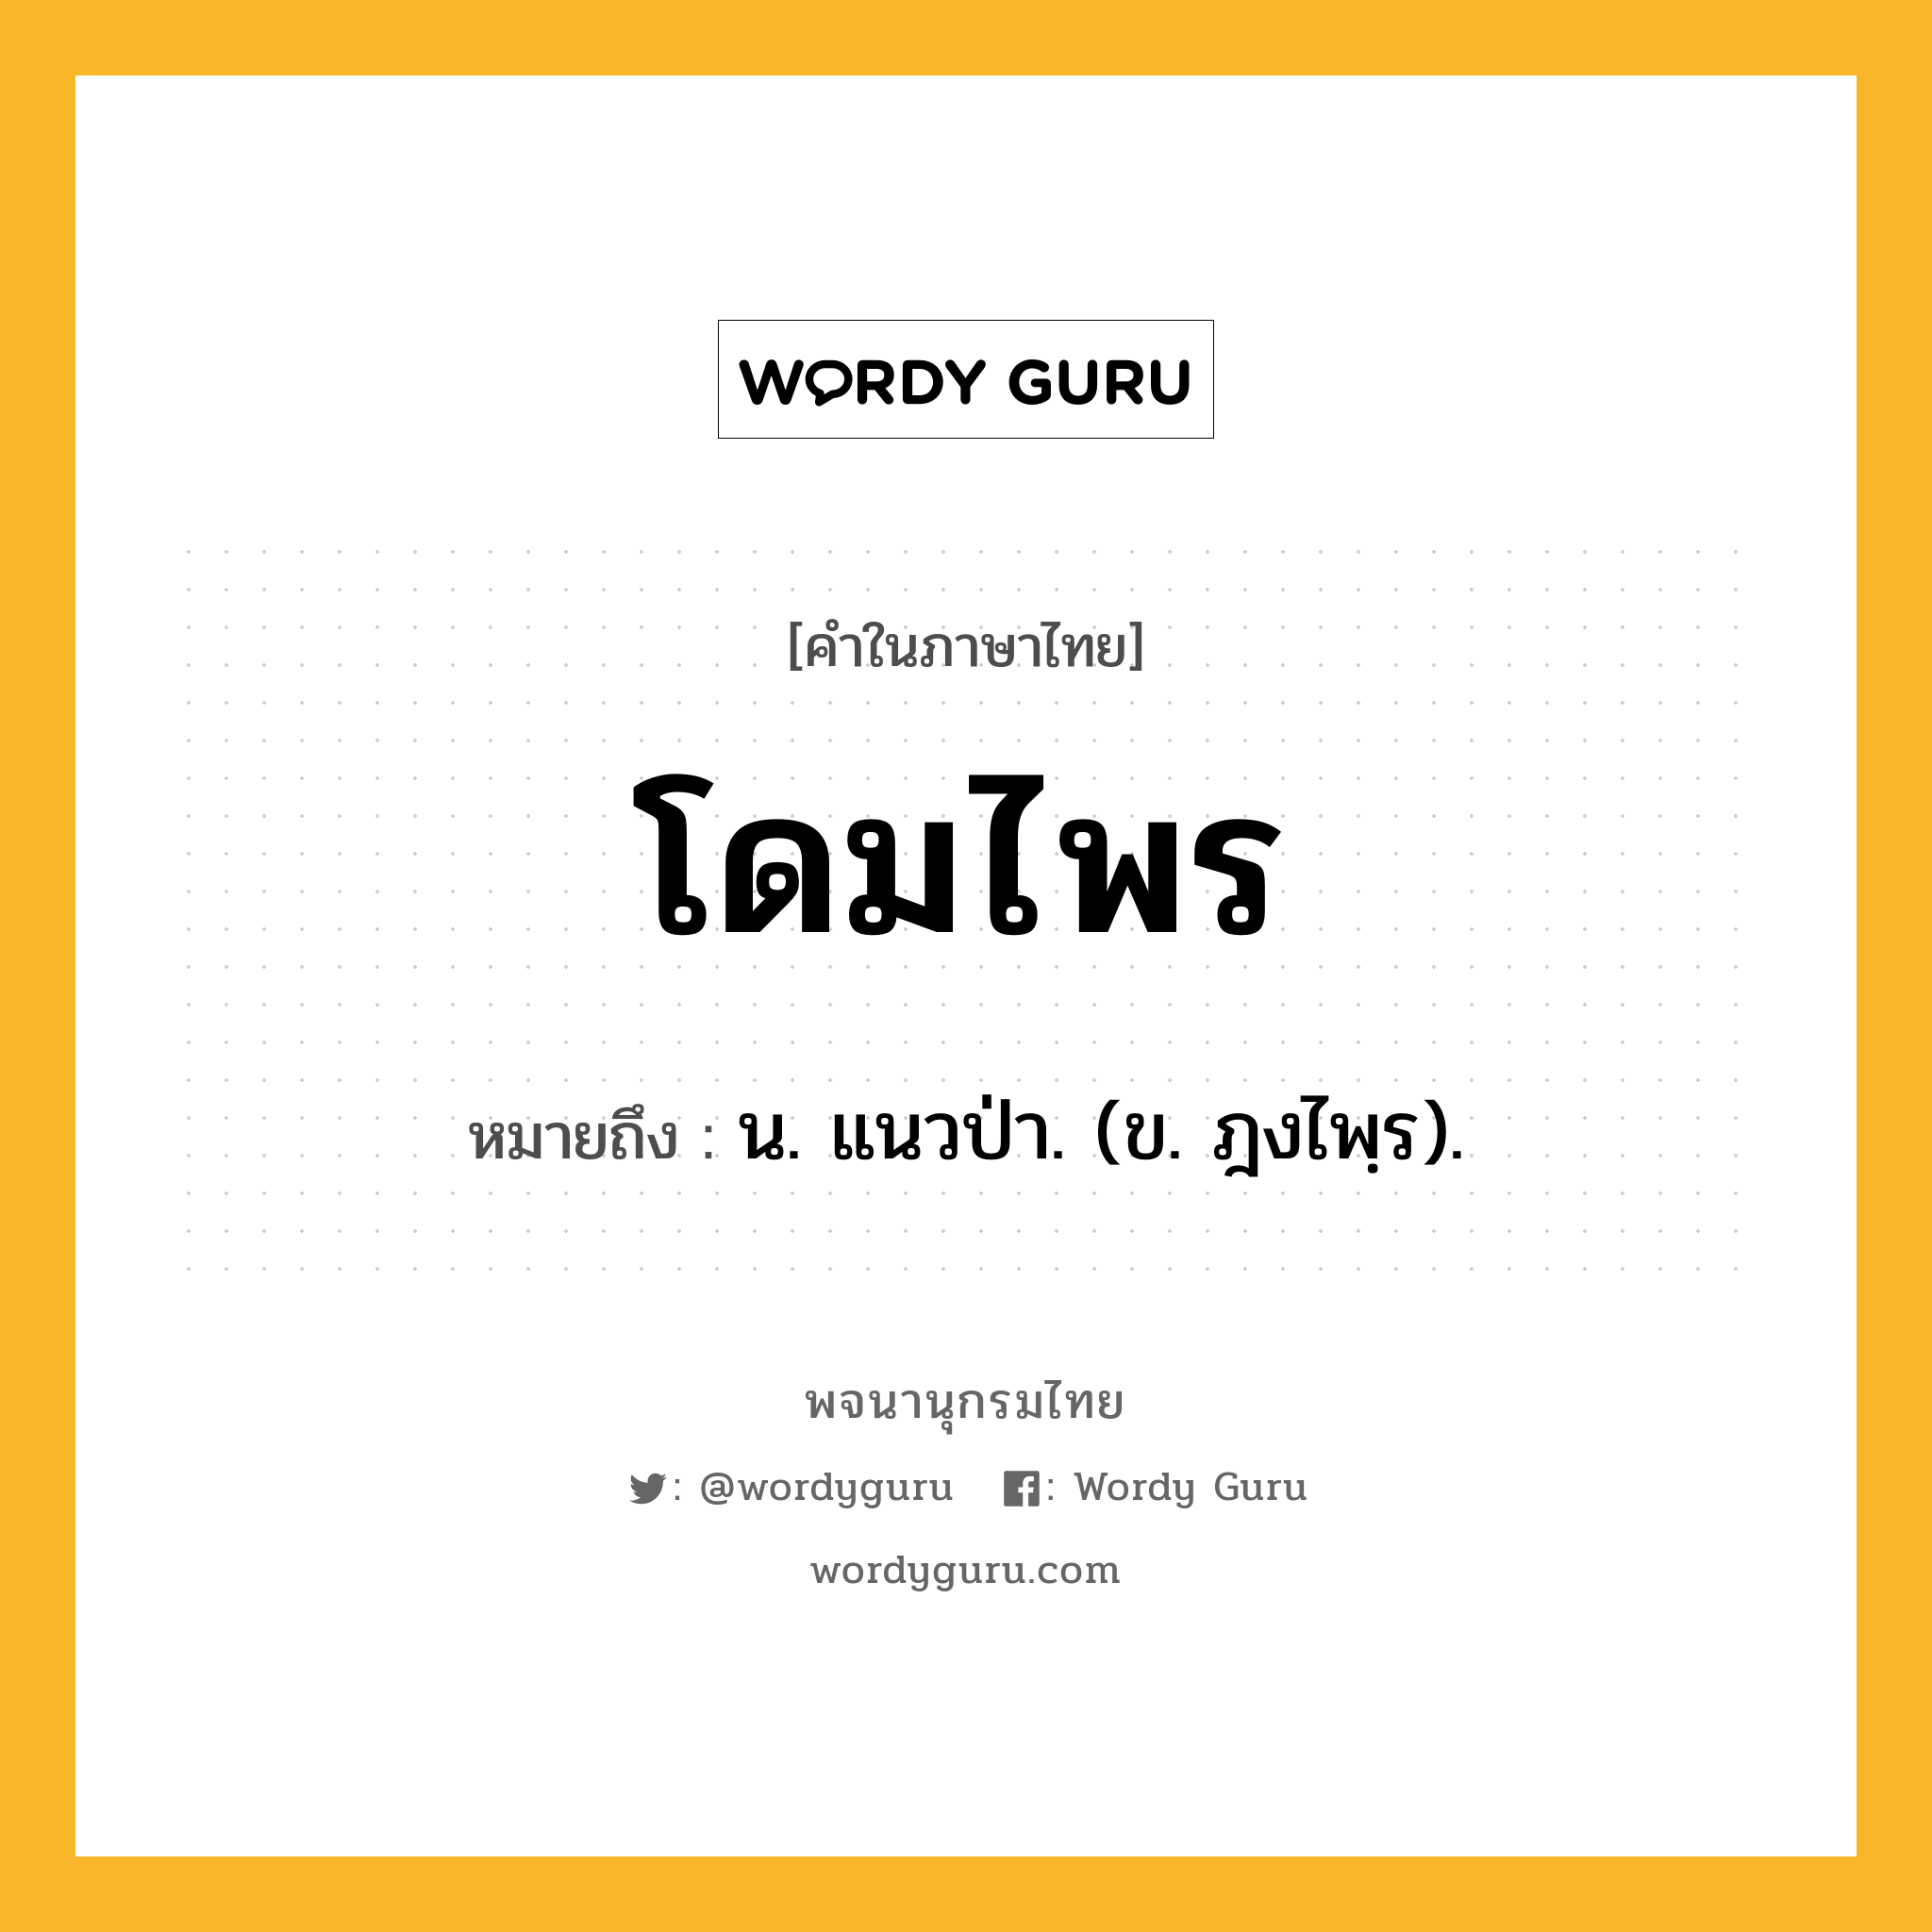 โดมไพร ความหมาย หมายถึงอะไร?, คำในภาษาไทย โดมไพร หมายถึง น. แนวป่า. (ข. ฎงไพฺร).